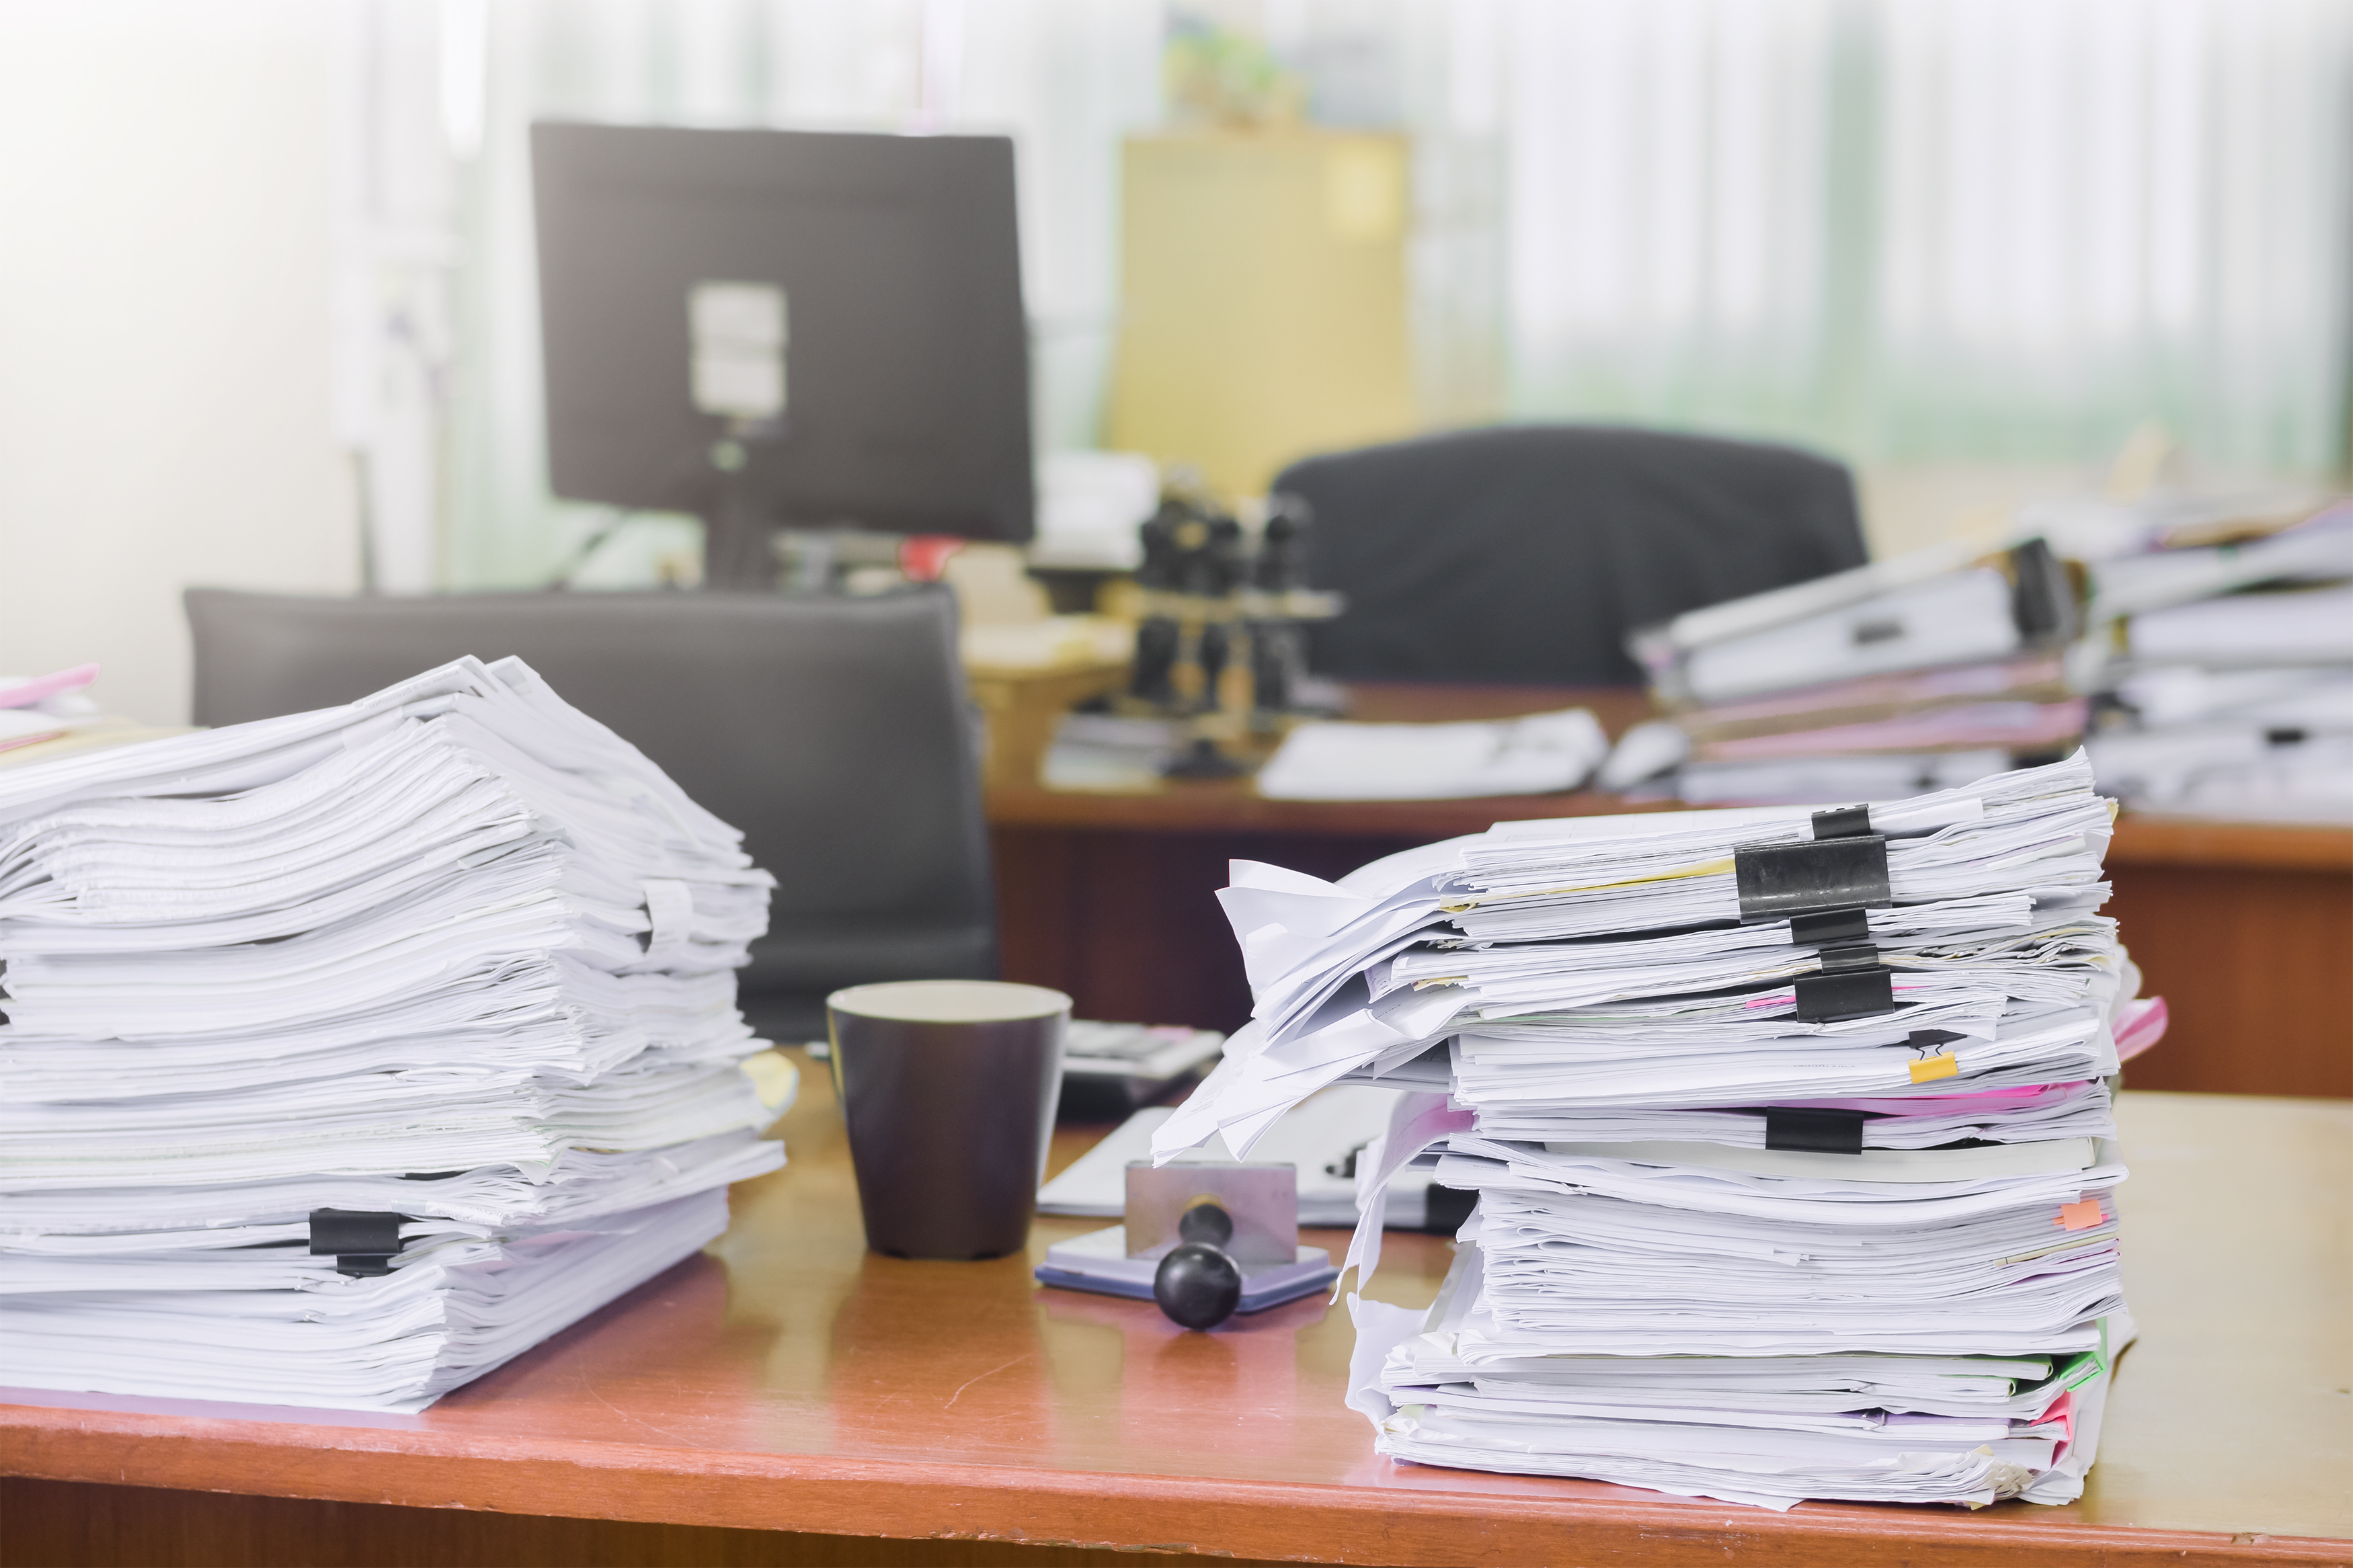 Office papers. Бумаги на столе. Бумаги на столе в офисе. Письменный стол с бумагами. Стопка документов в офисе.